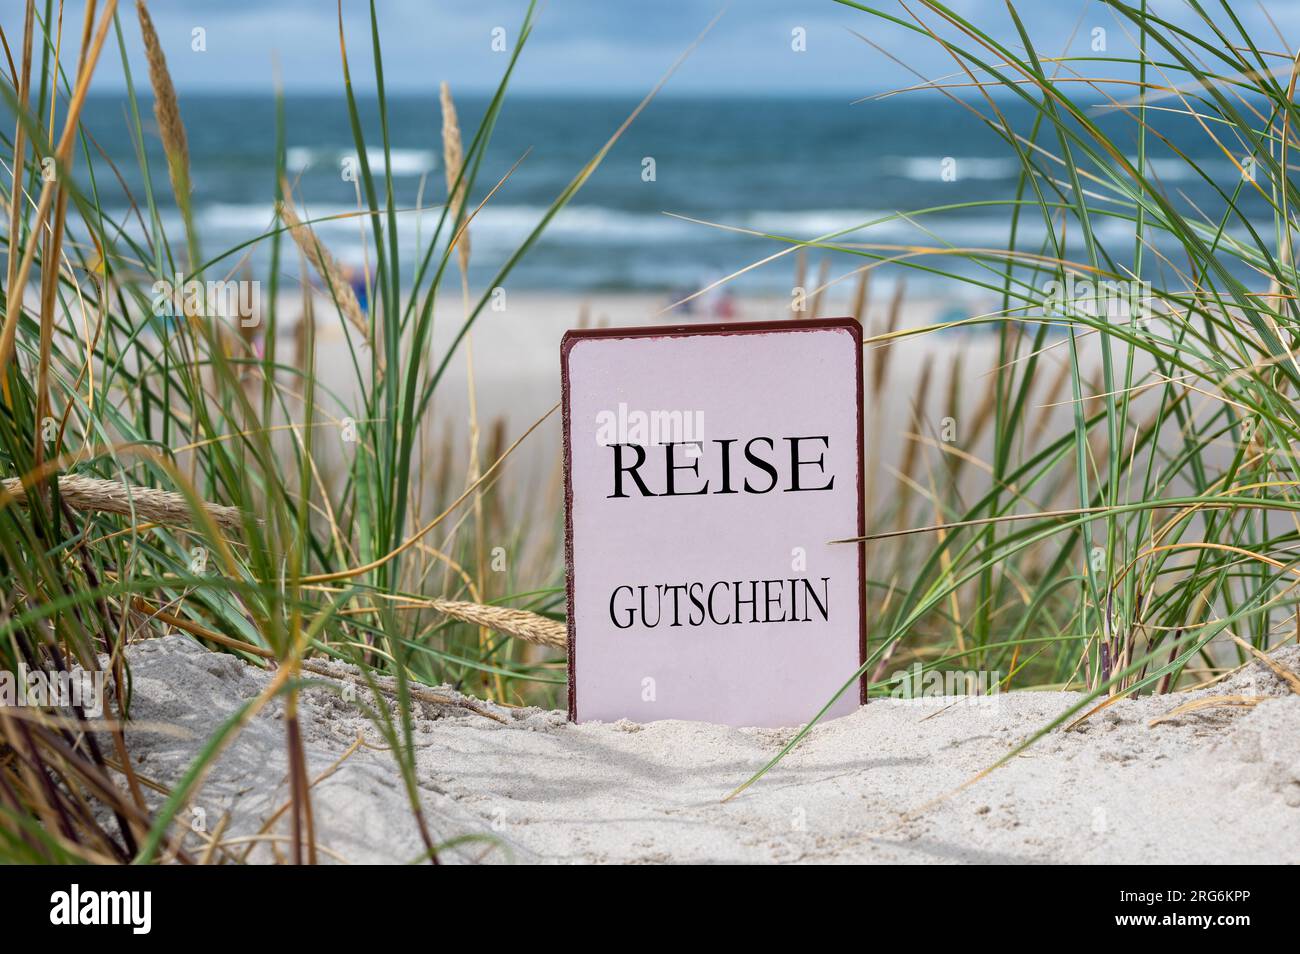 The German text 'Reise Gutschein' (travel voucher) in the sand dunes at the beach. Stock Photo